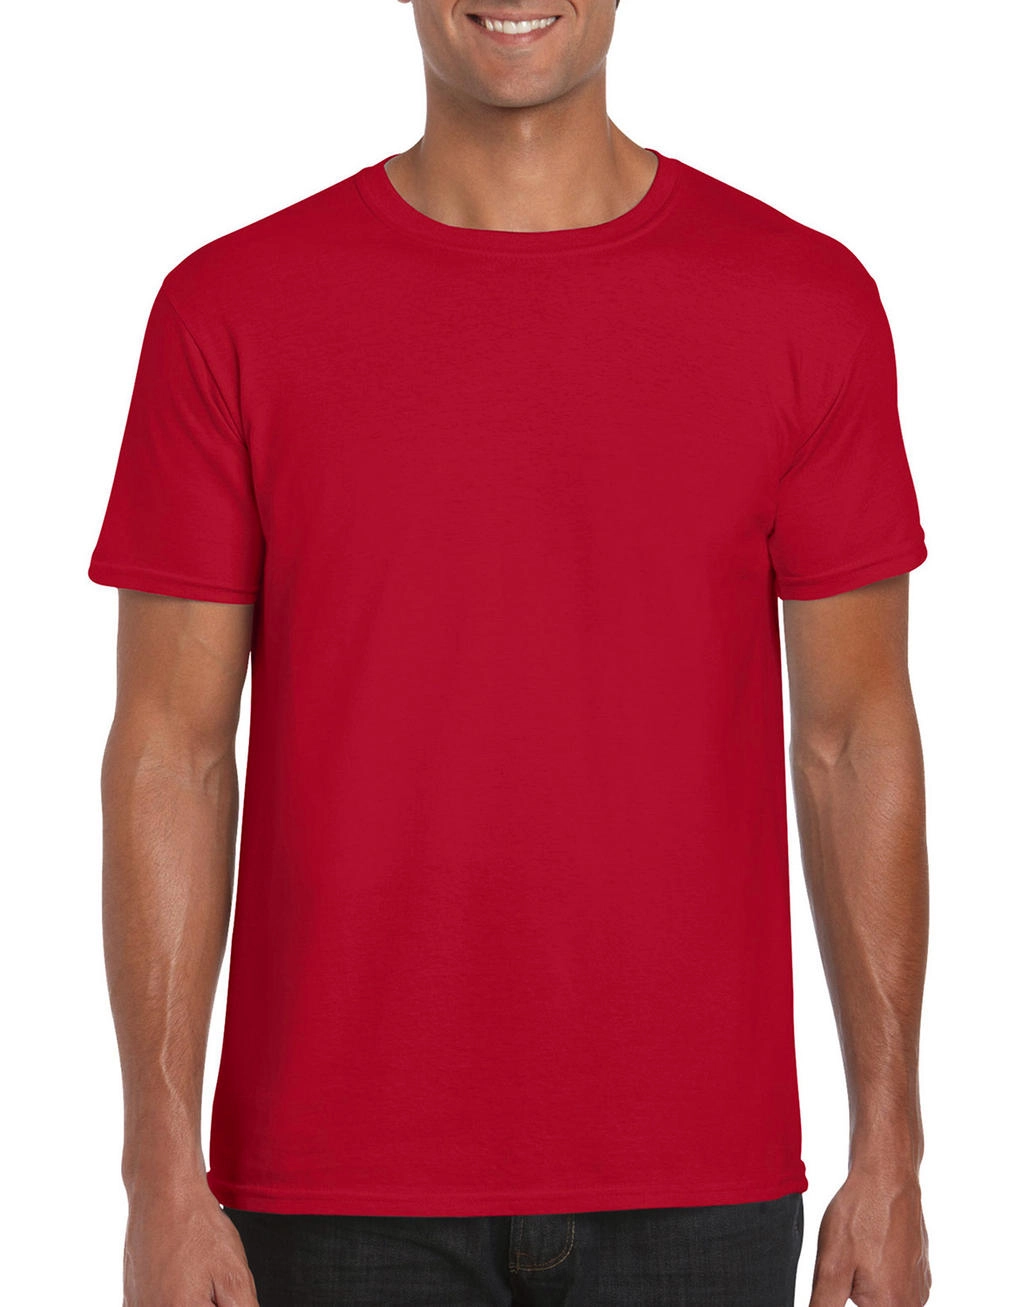 Softstyle® Ring Spun T-Shirt zum Besticken und Bedrucken in der Farbe Red mit Ihren Logo, Schriftzug oder Motiv.